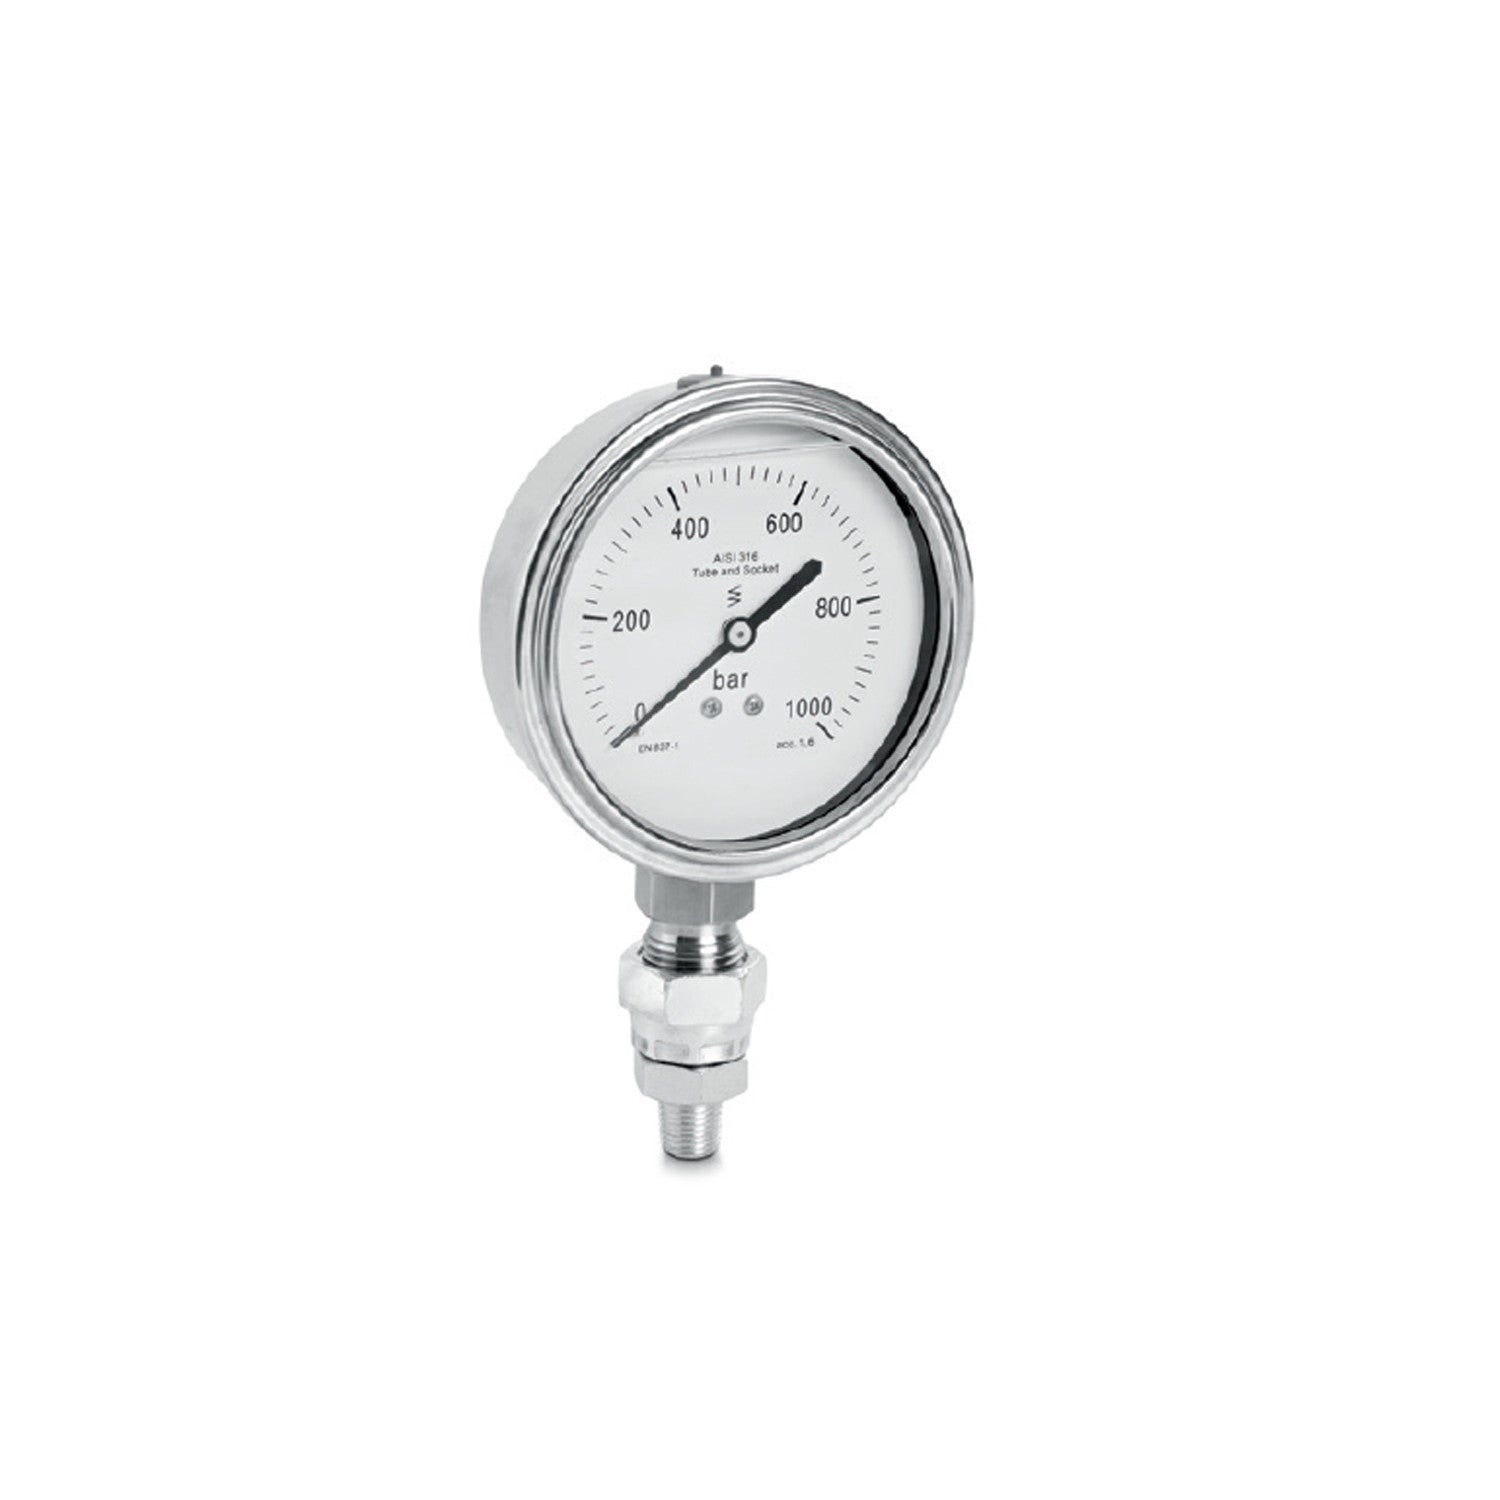 Glycerine pressure gauge diameter 100 mm, scale 0-1000bar - OMCN M/2